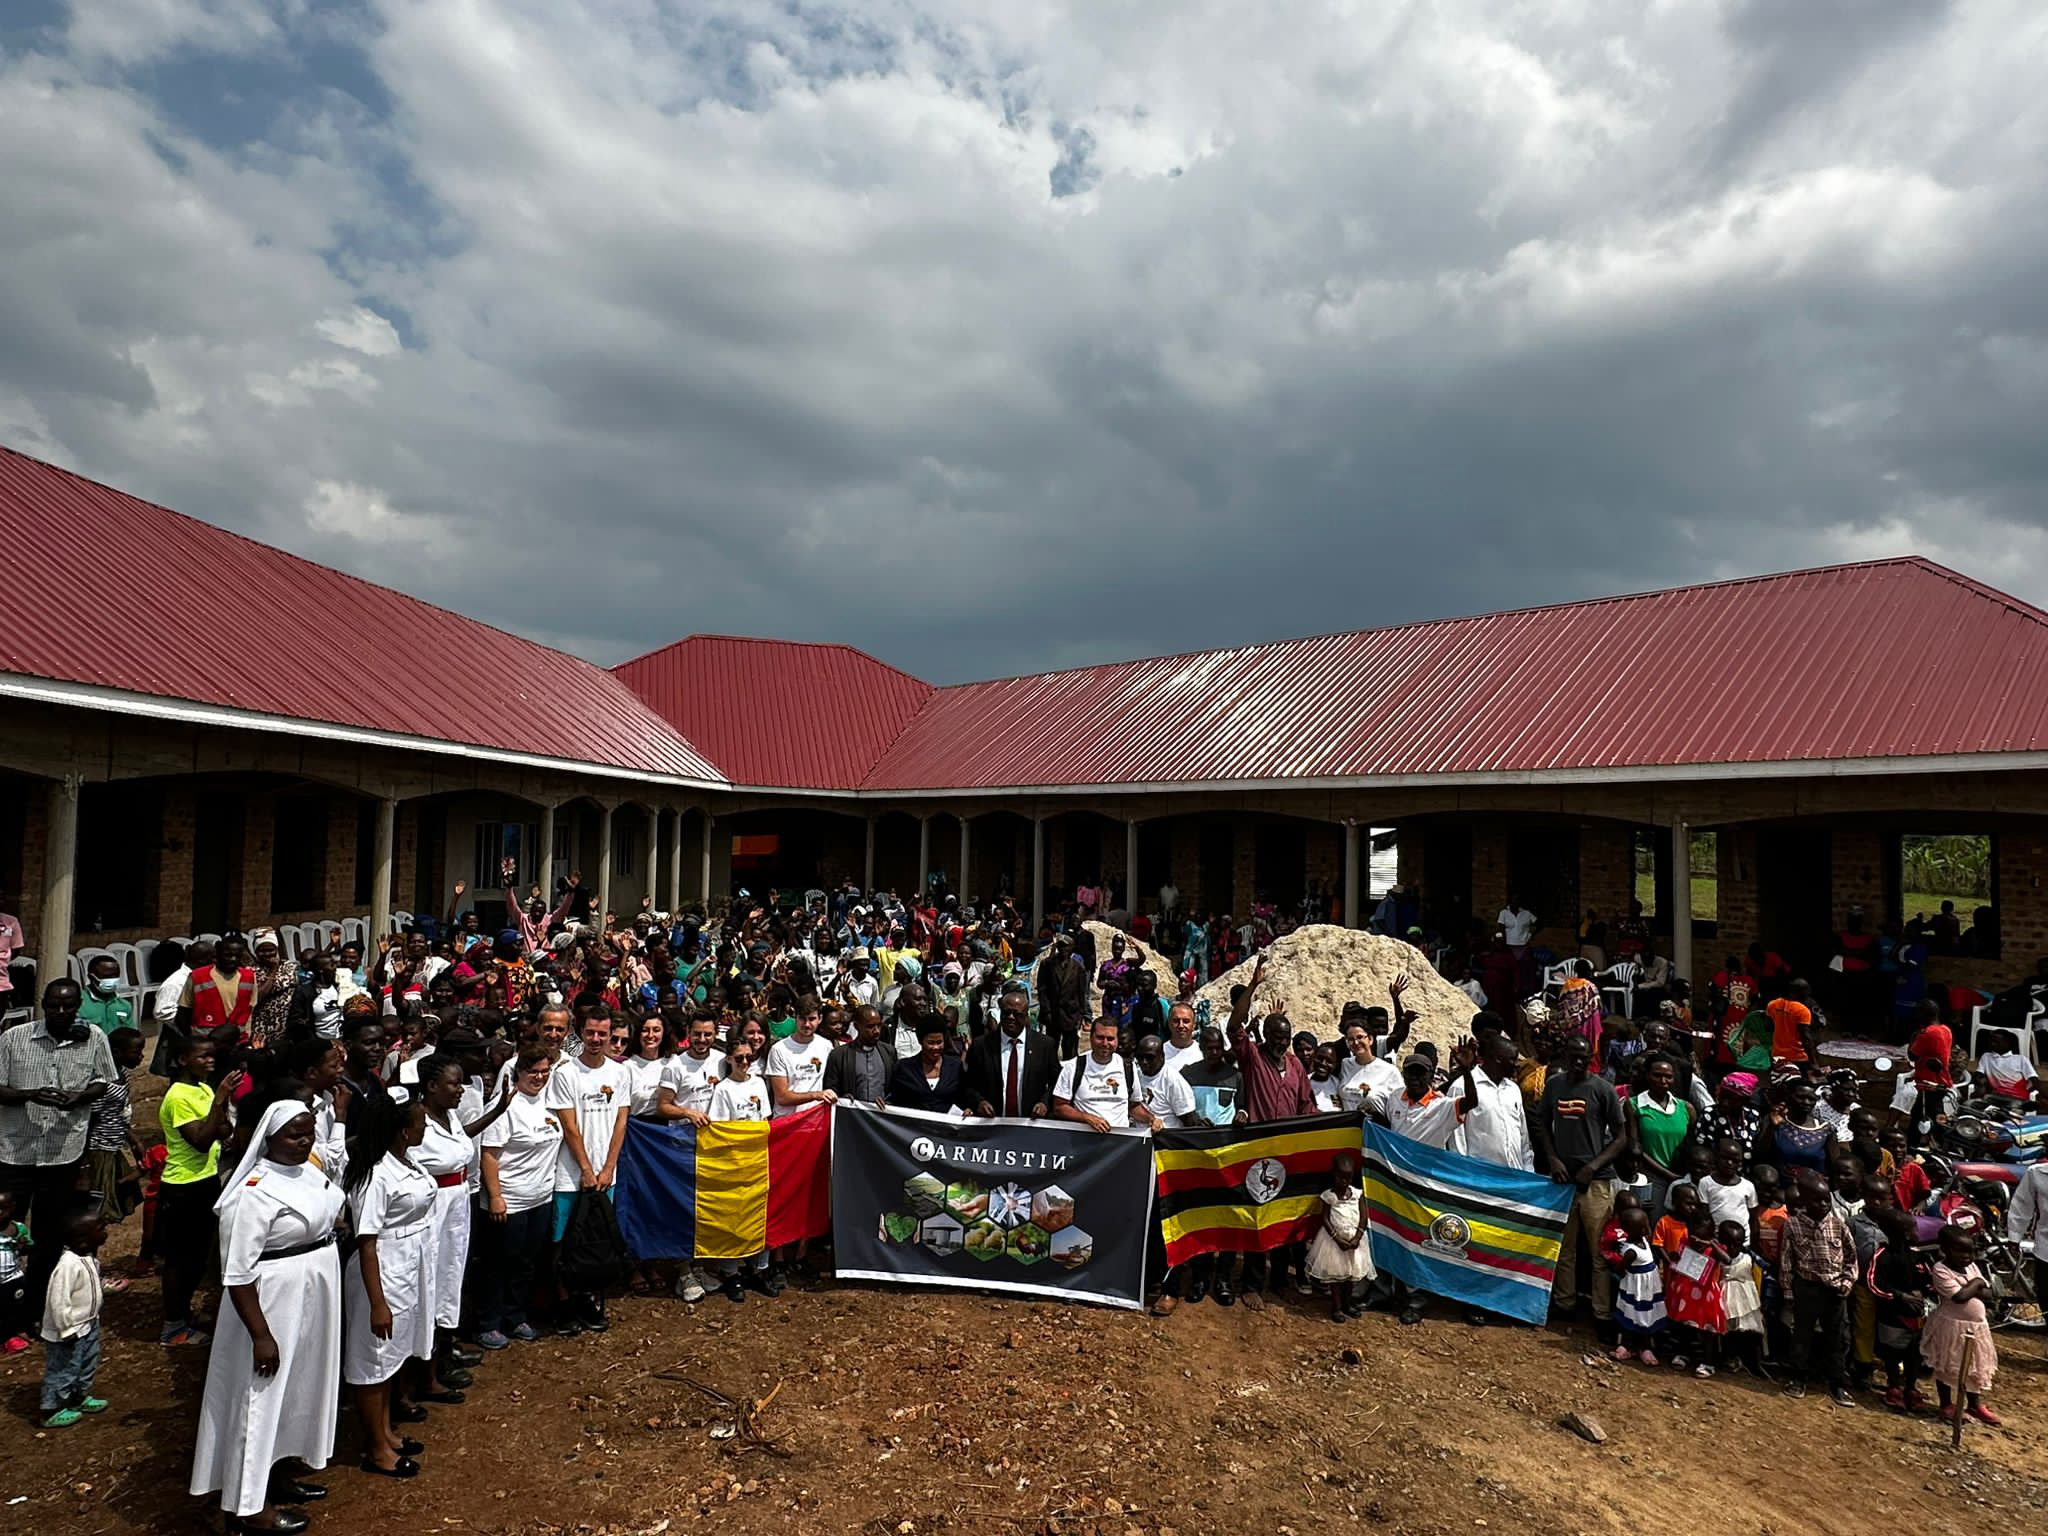 Carmistin Village proiectul nostru prinde contur în Uganda